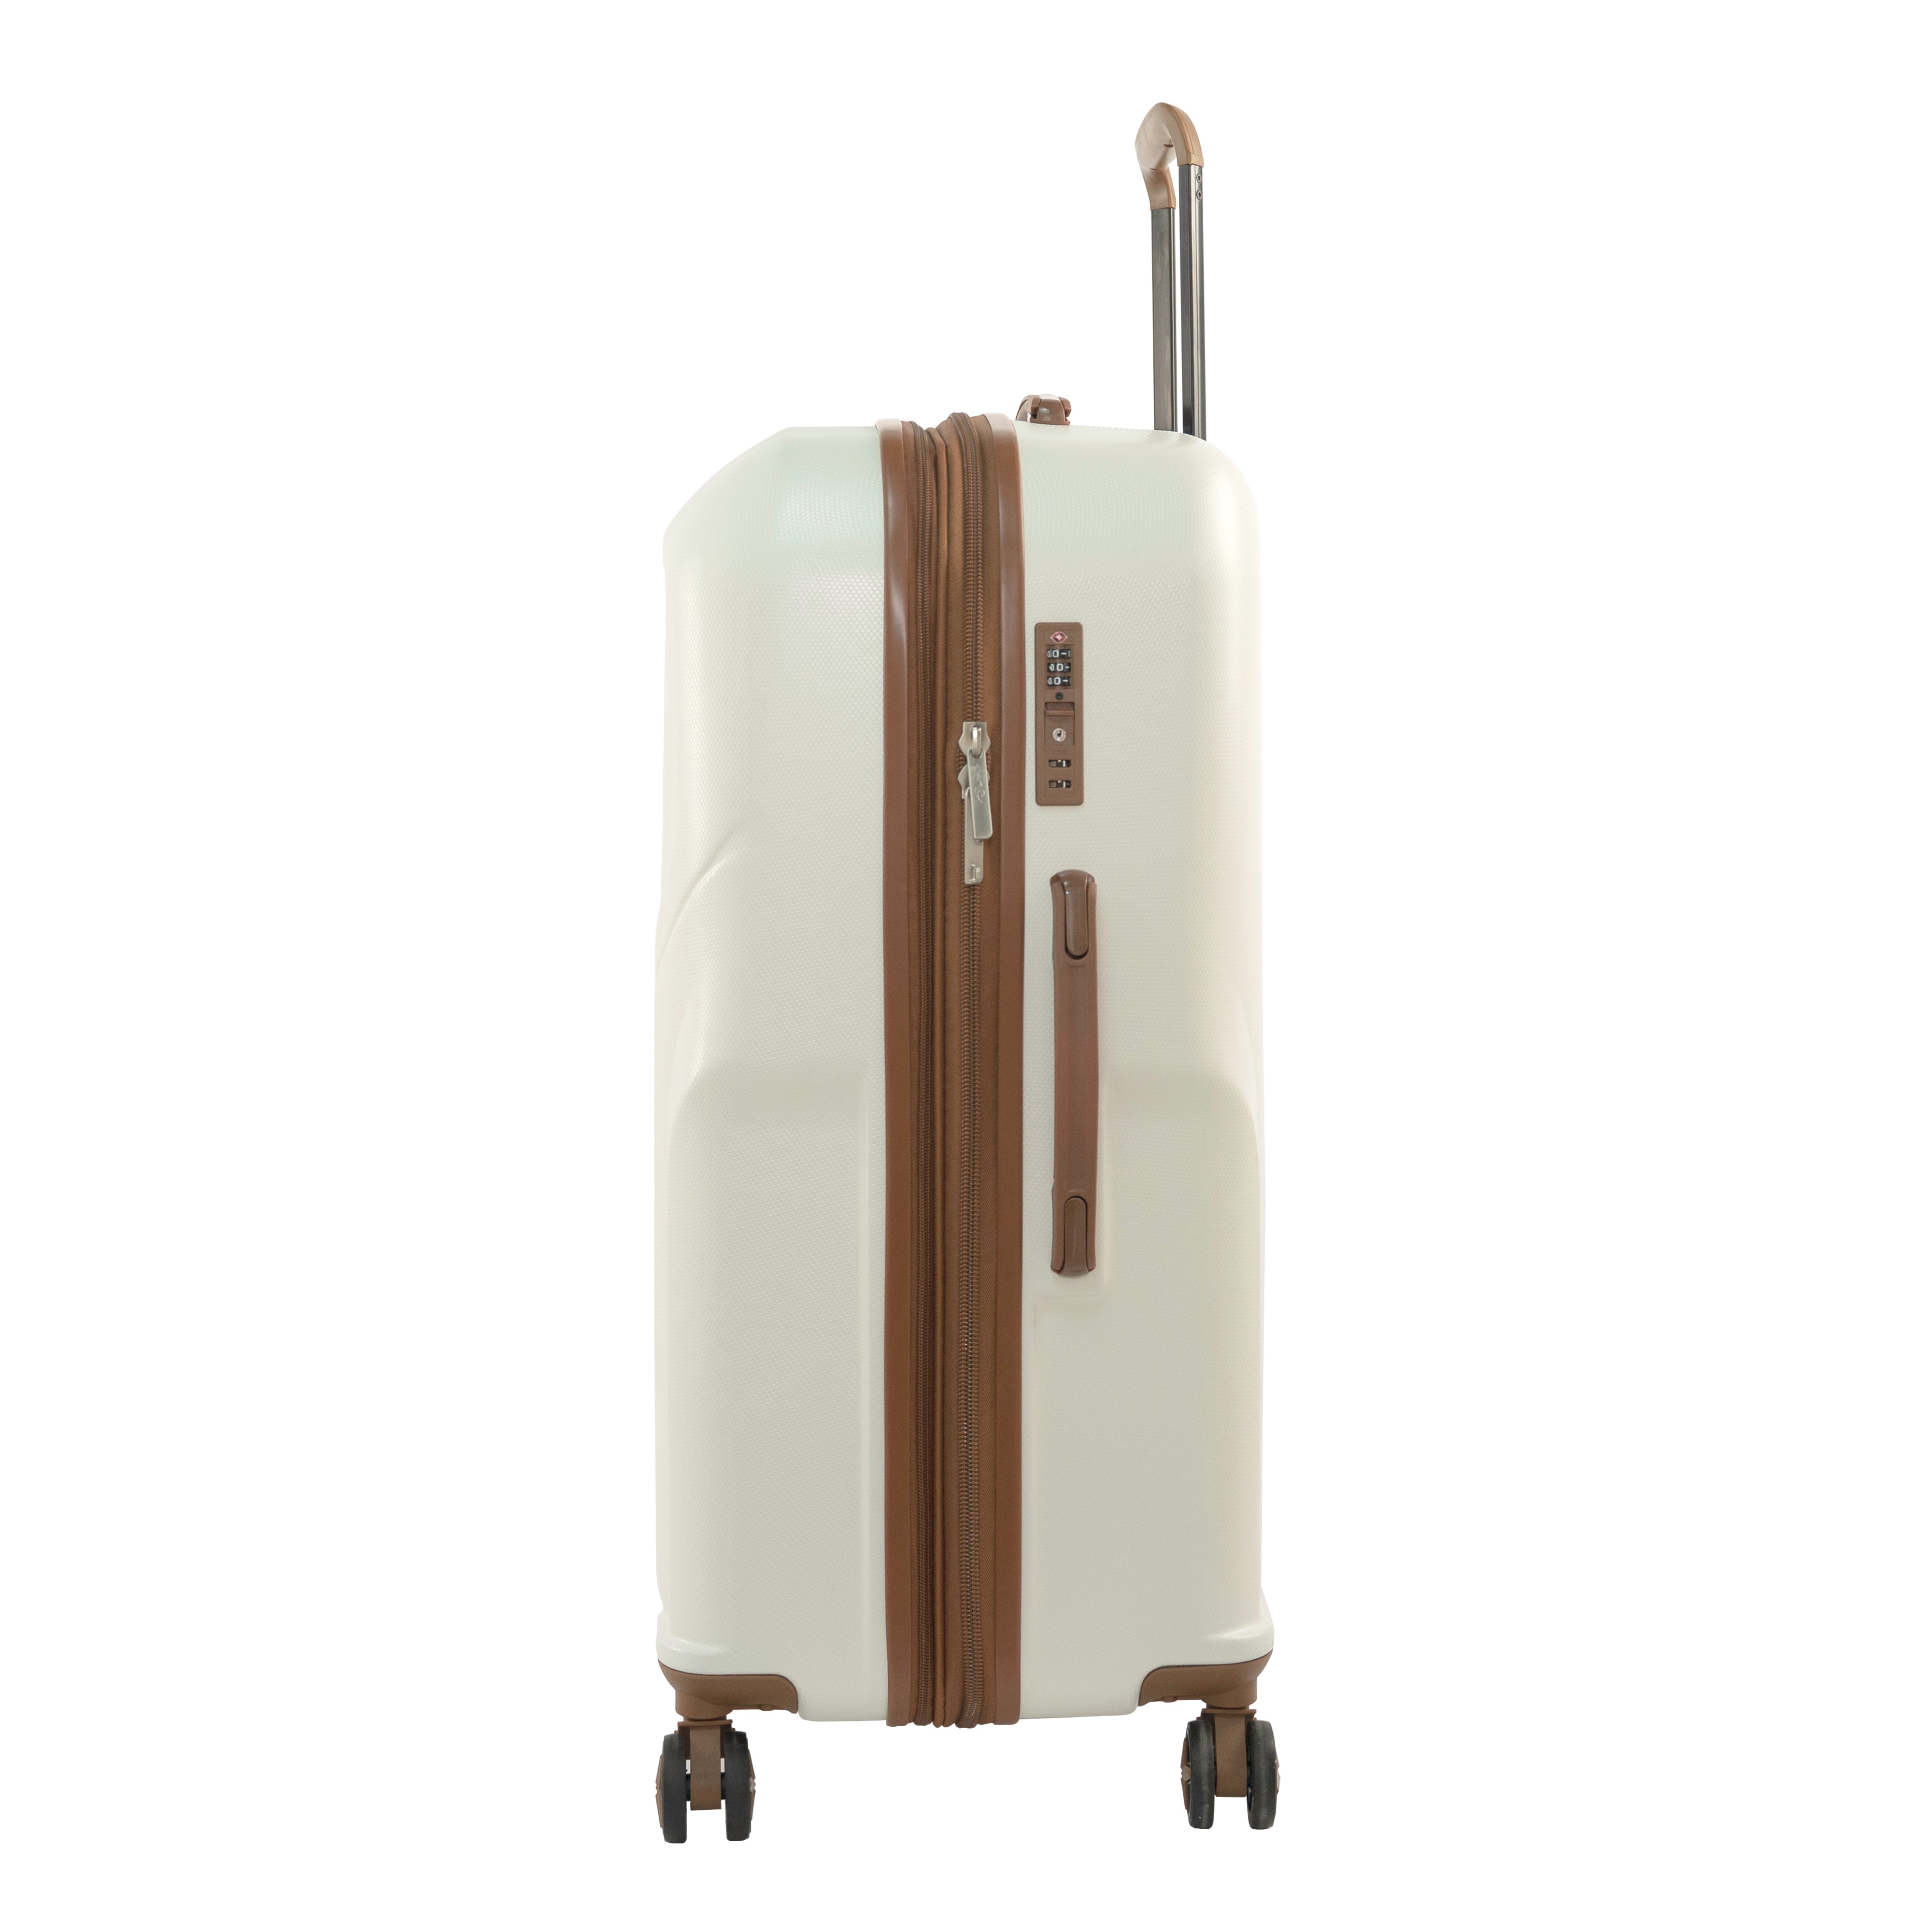 Sonada Upright Luggage Expandable Hardside Suitcase Check In White